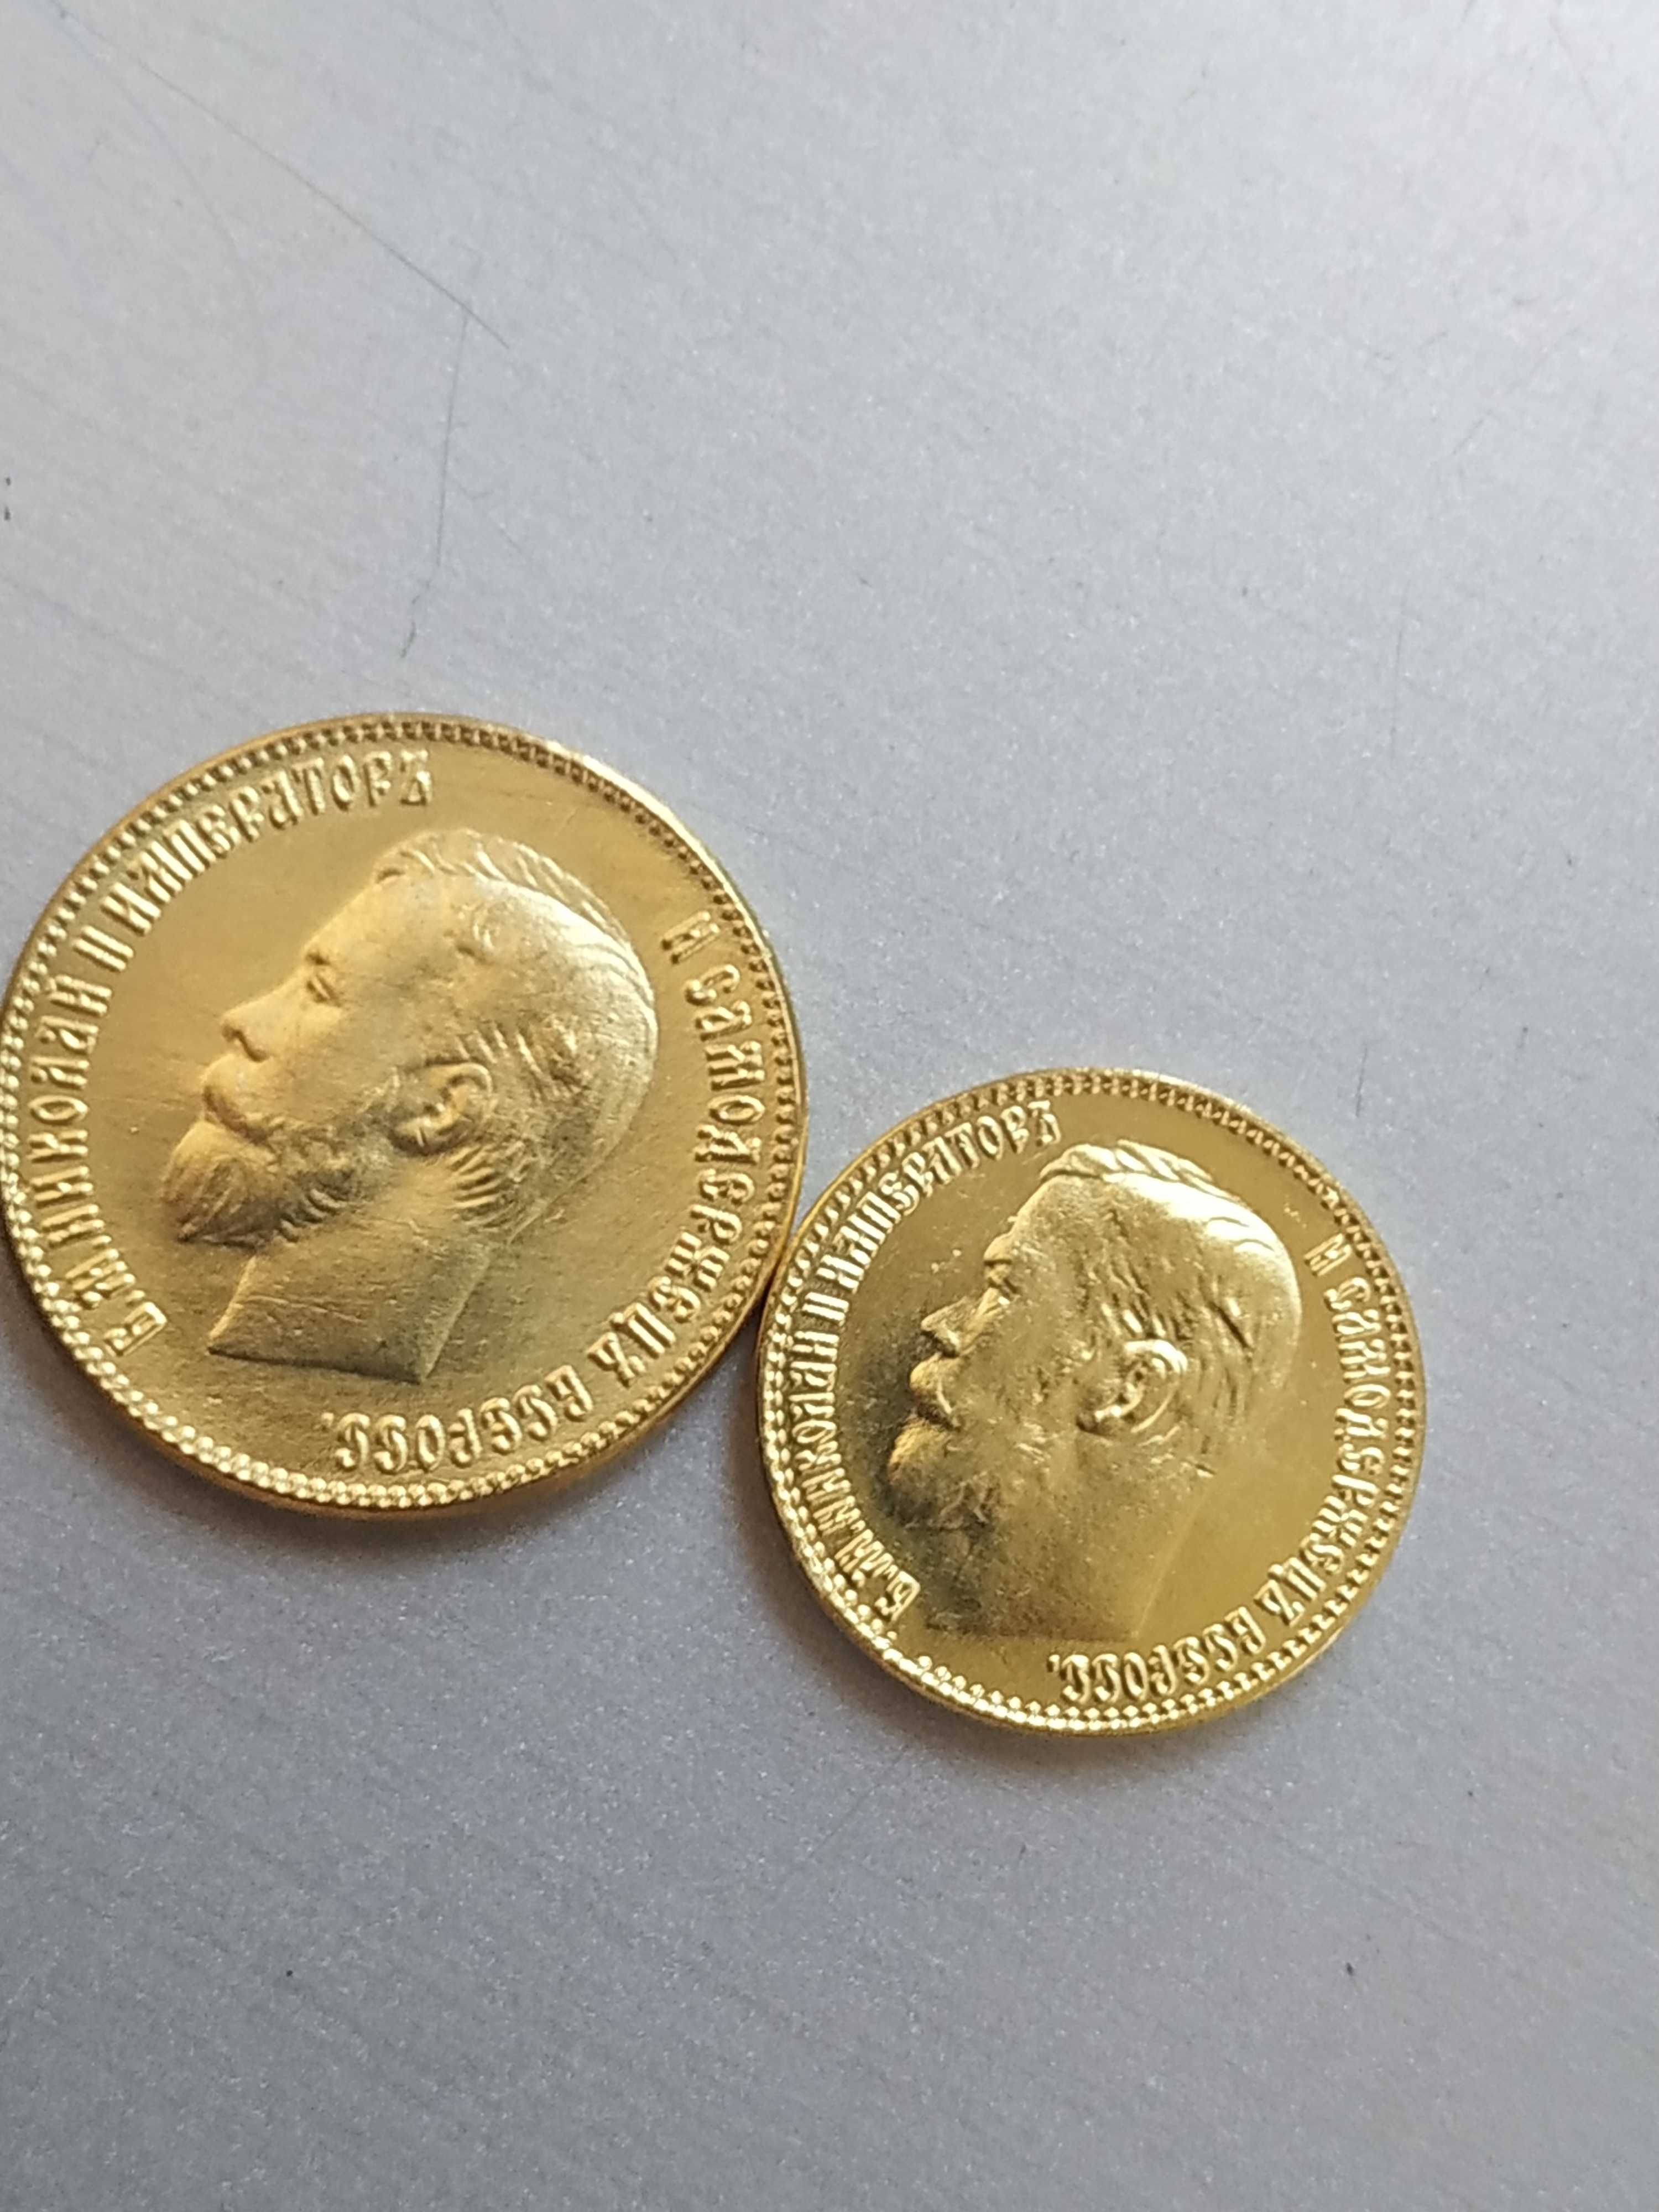 Монеты царские золотые